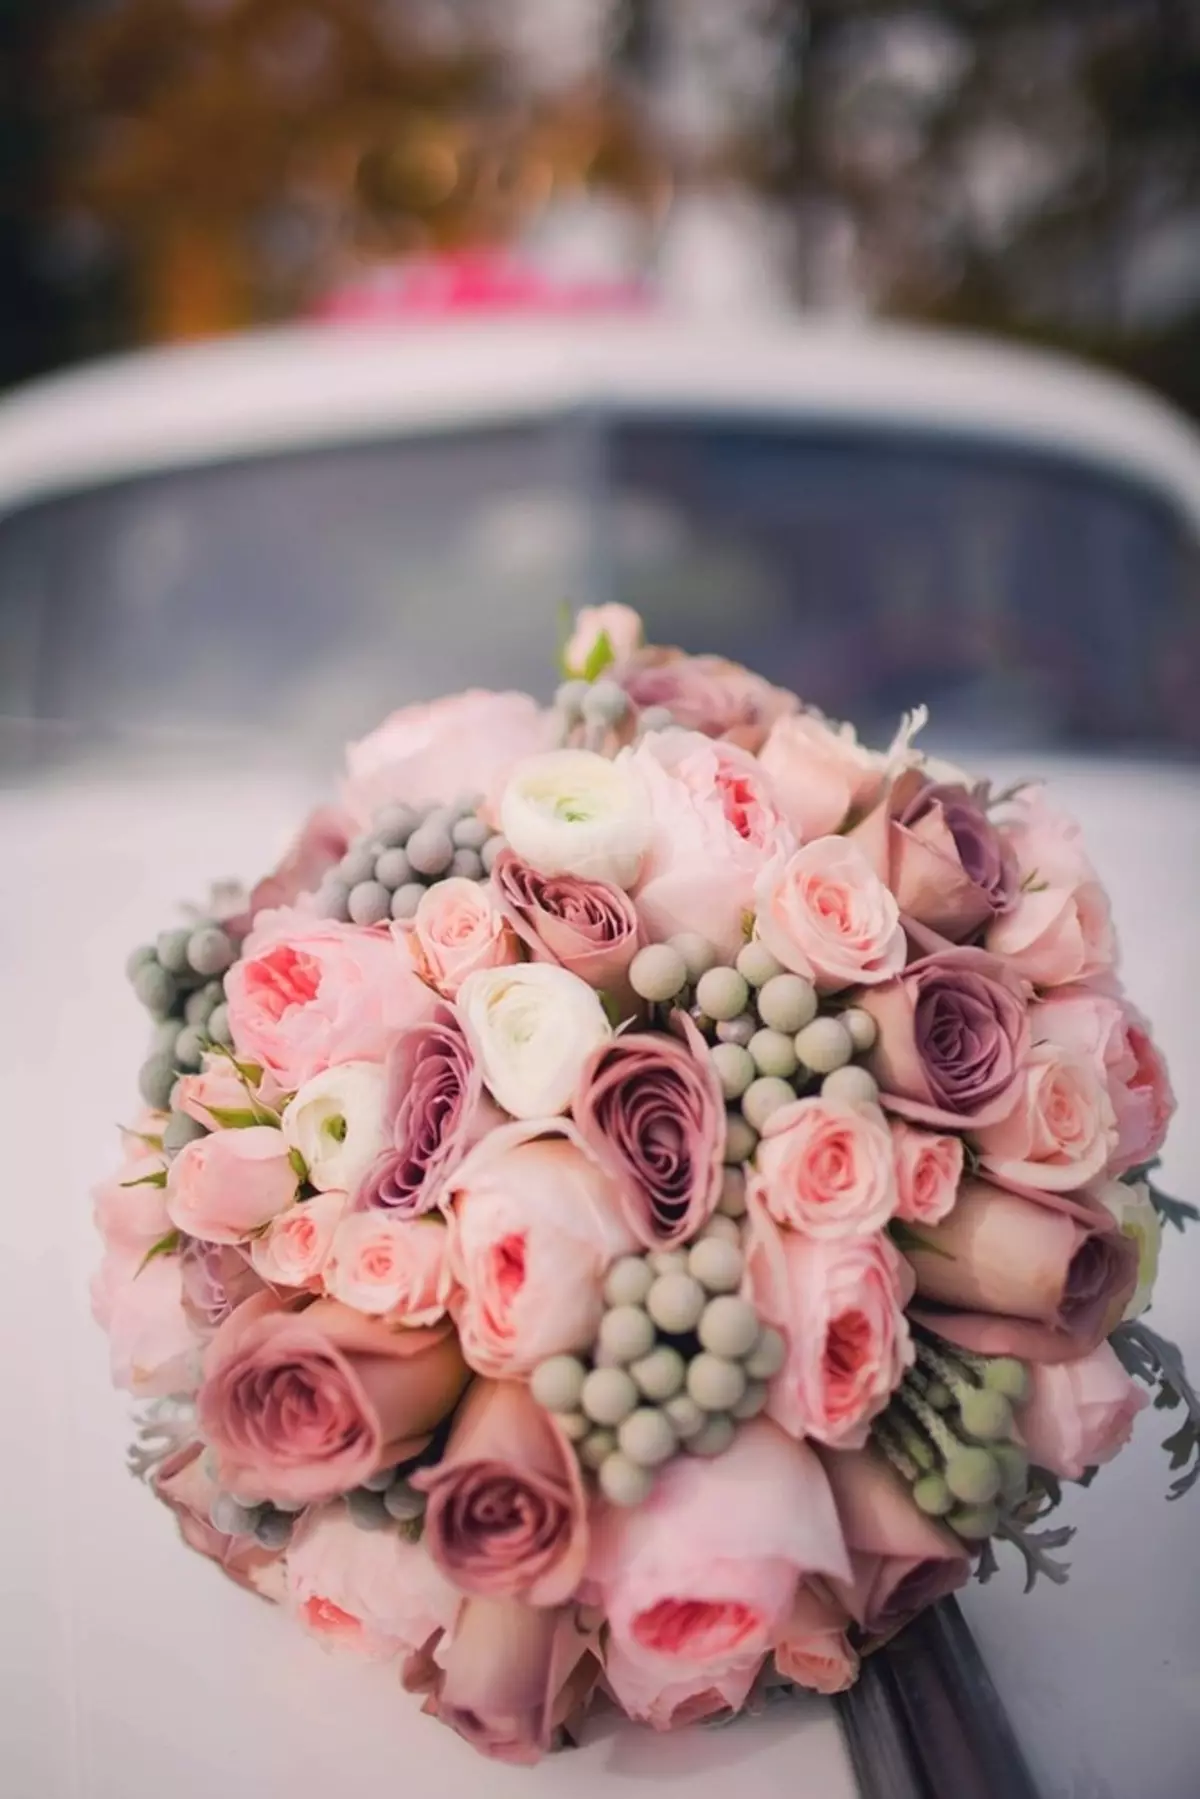 ช่อดอกไม้เจ้าสาวของดอกกุหลาบ (74 รูป): องค์ประกอบงานแต่งงานที่ทำจากดอกกุหลาบกับ Eustomas สีขาว, Freesies สีน้ำเงินและ alstromeries สีแดง 8005_23